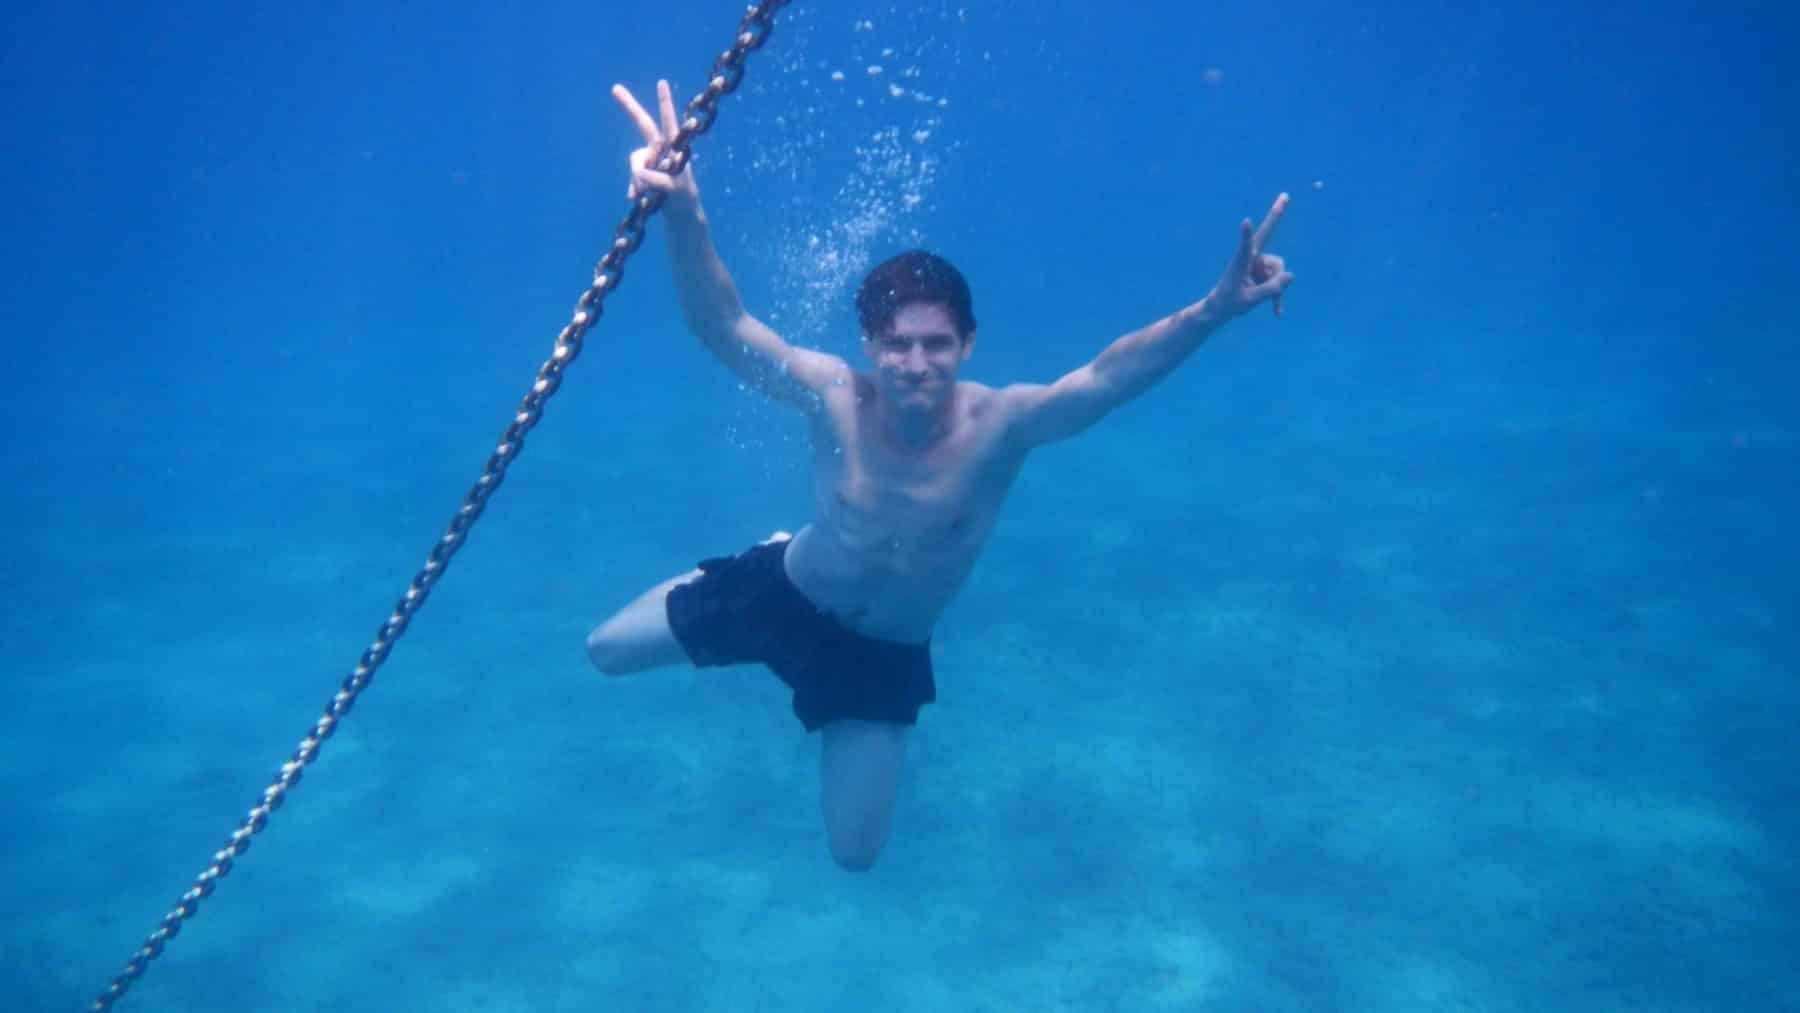 Ein Mann unter Wasser macht mit beiden Händen Peace-Zeichen und schwimmt neben einer vertikalen Kette einer Segelyacht im klaren, blauen Wasser.